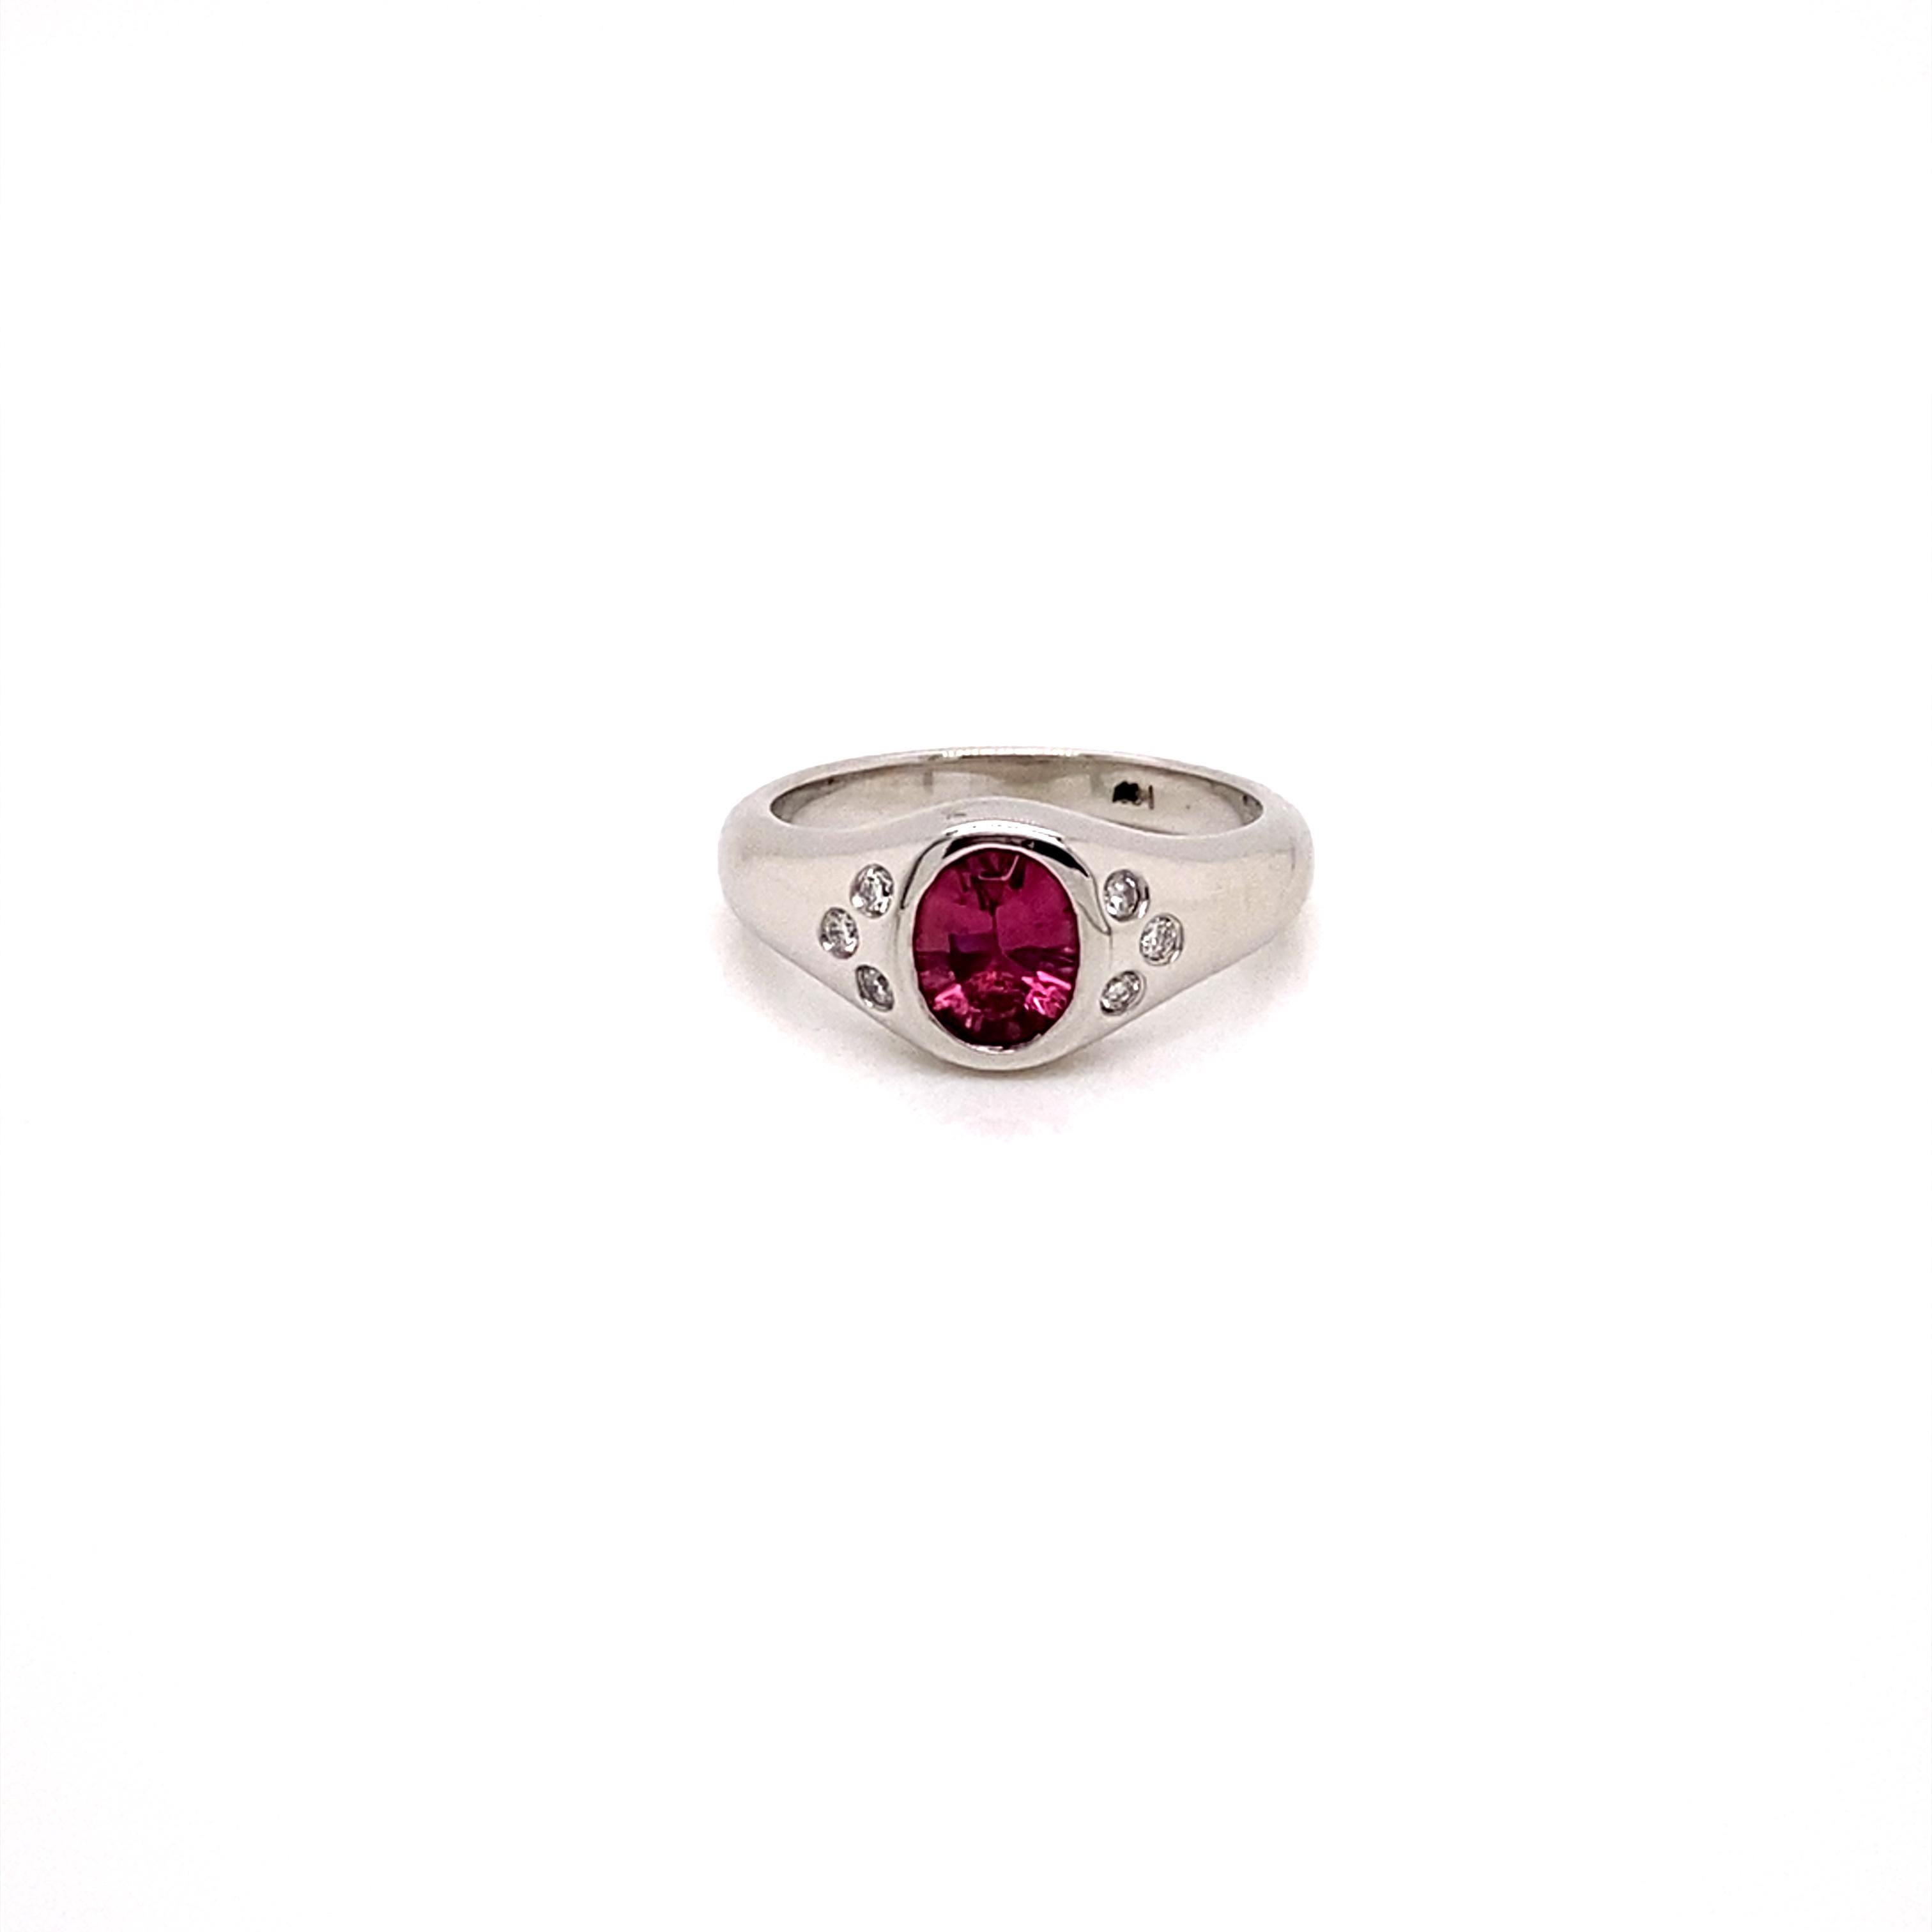 Dieser atemberaubende Ring aus Weißgold mit rosa Turmalin und Diamanten ist ein modernes Update des klassischen Siegelrings für den kleinen Finger.

Mit einem wunderschönen ovalen Turmalin in rosa Farbe und 6 funkelnden weißen Diamanten, die alle in